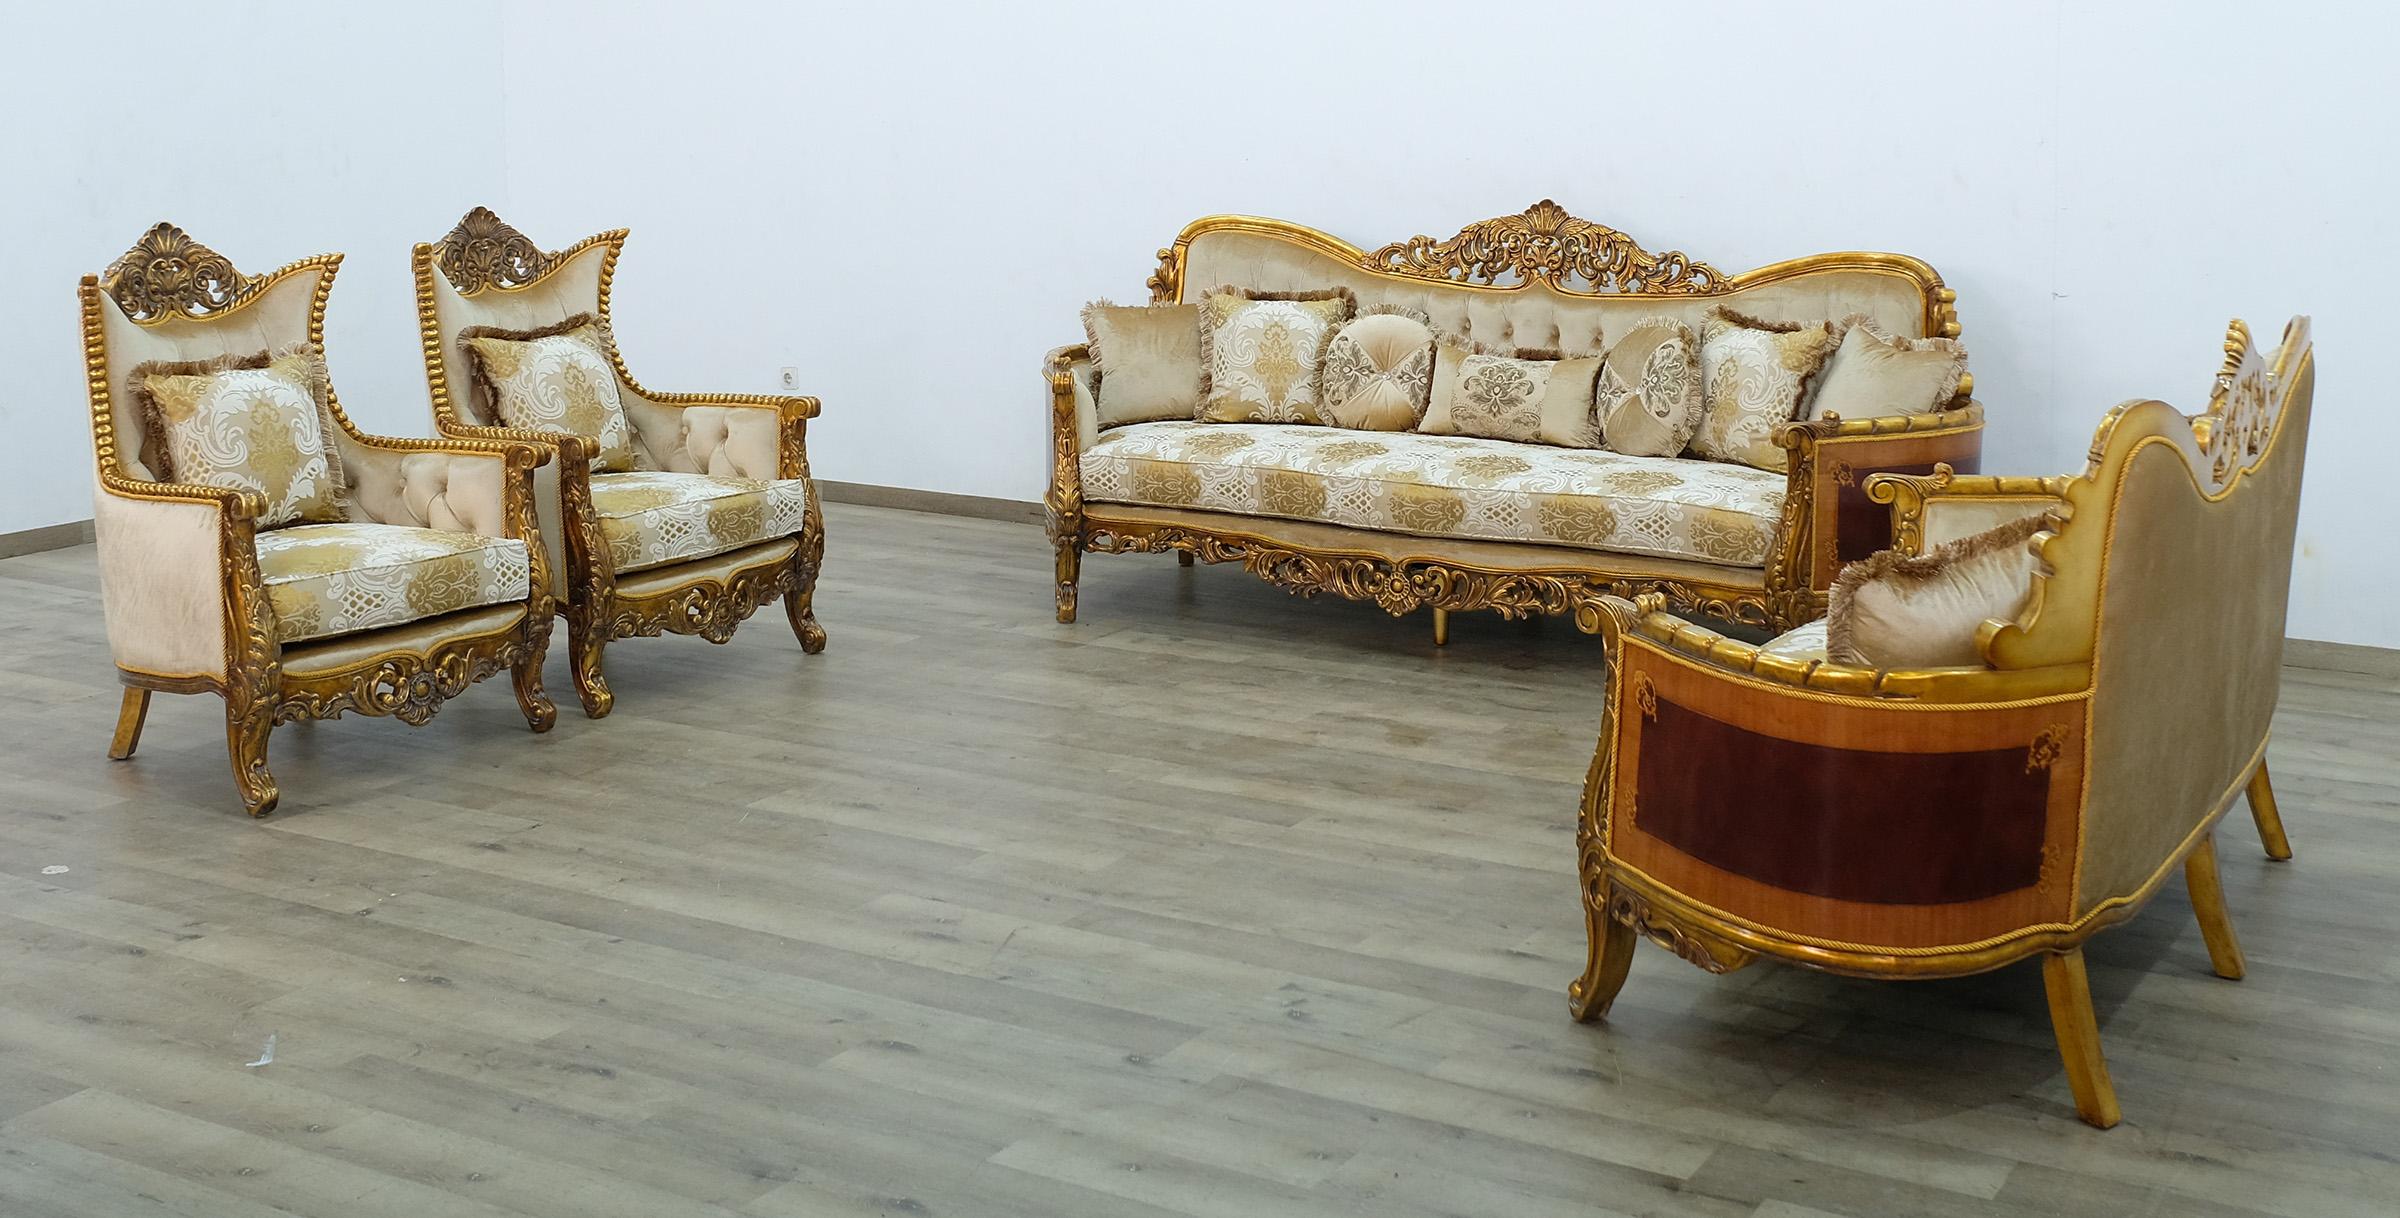 

    
Royal Luxury Gold & Sand Fabric MAGGIOLINI Sofa Set 4 Pcs EUROPEAN FURNITURE
